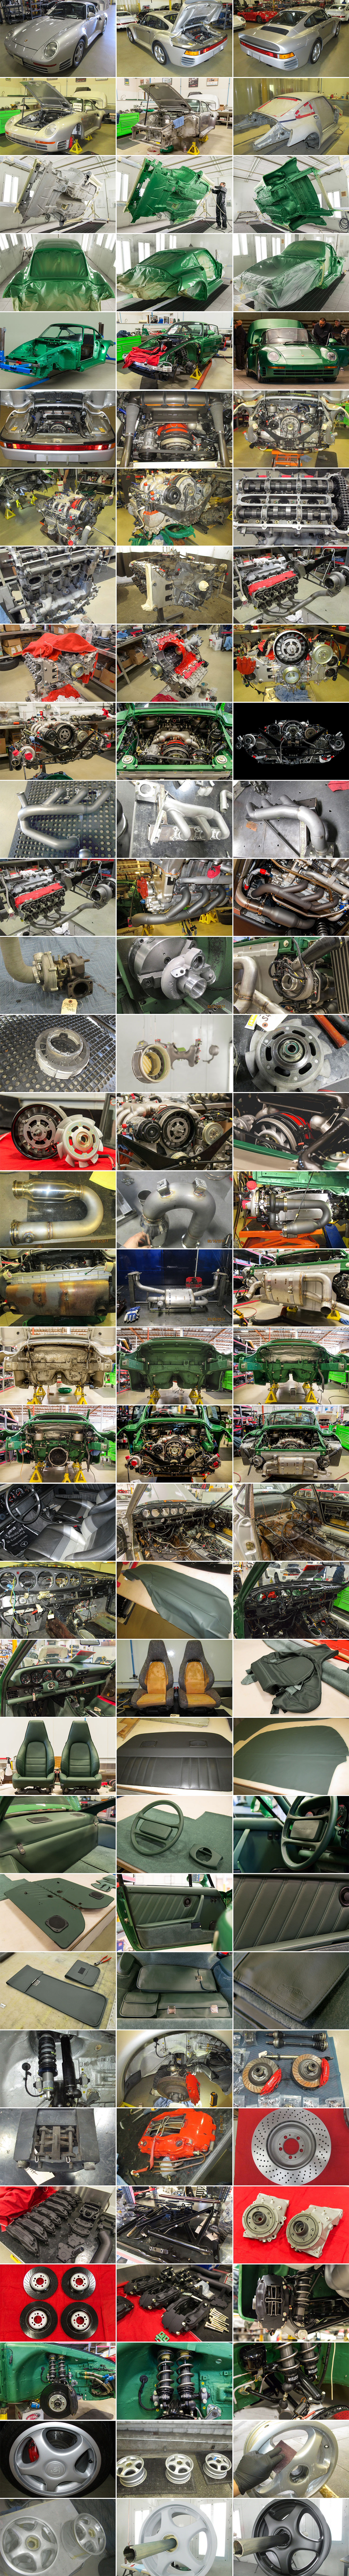 Porsche-959-Green-Web-Collage